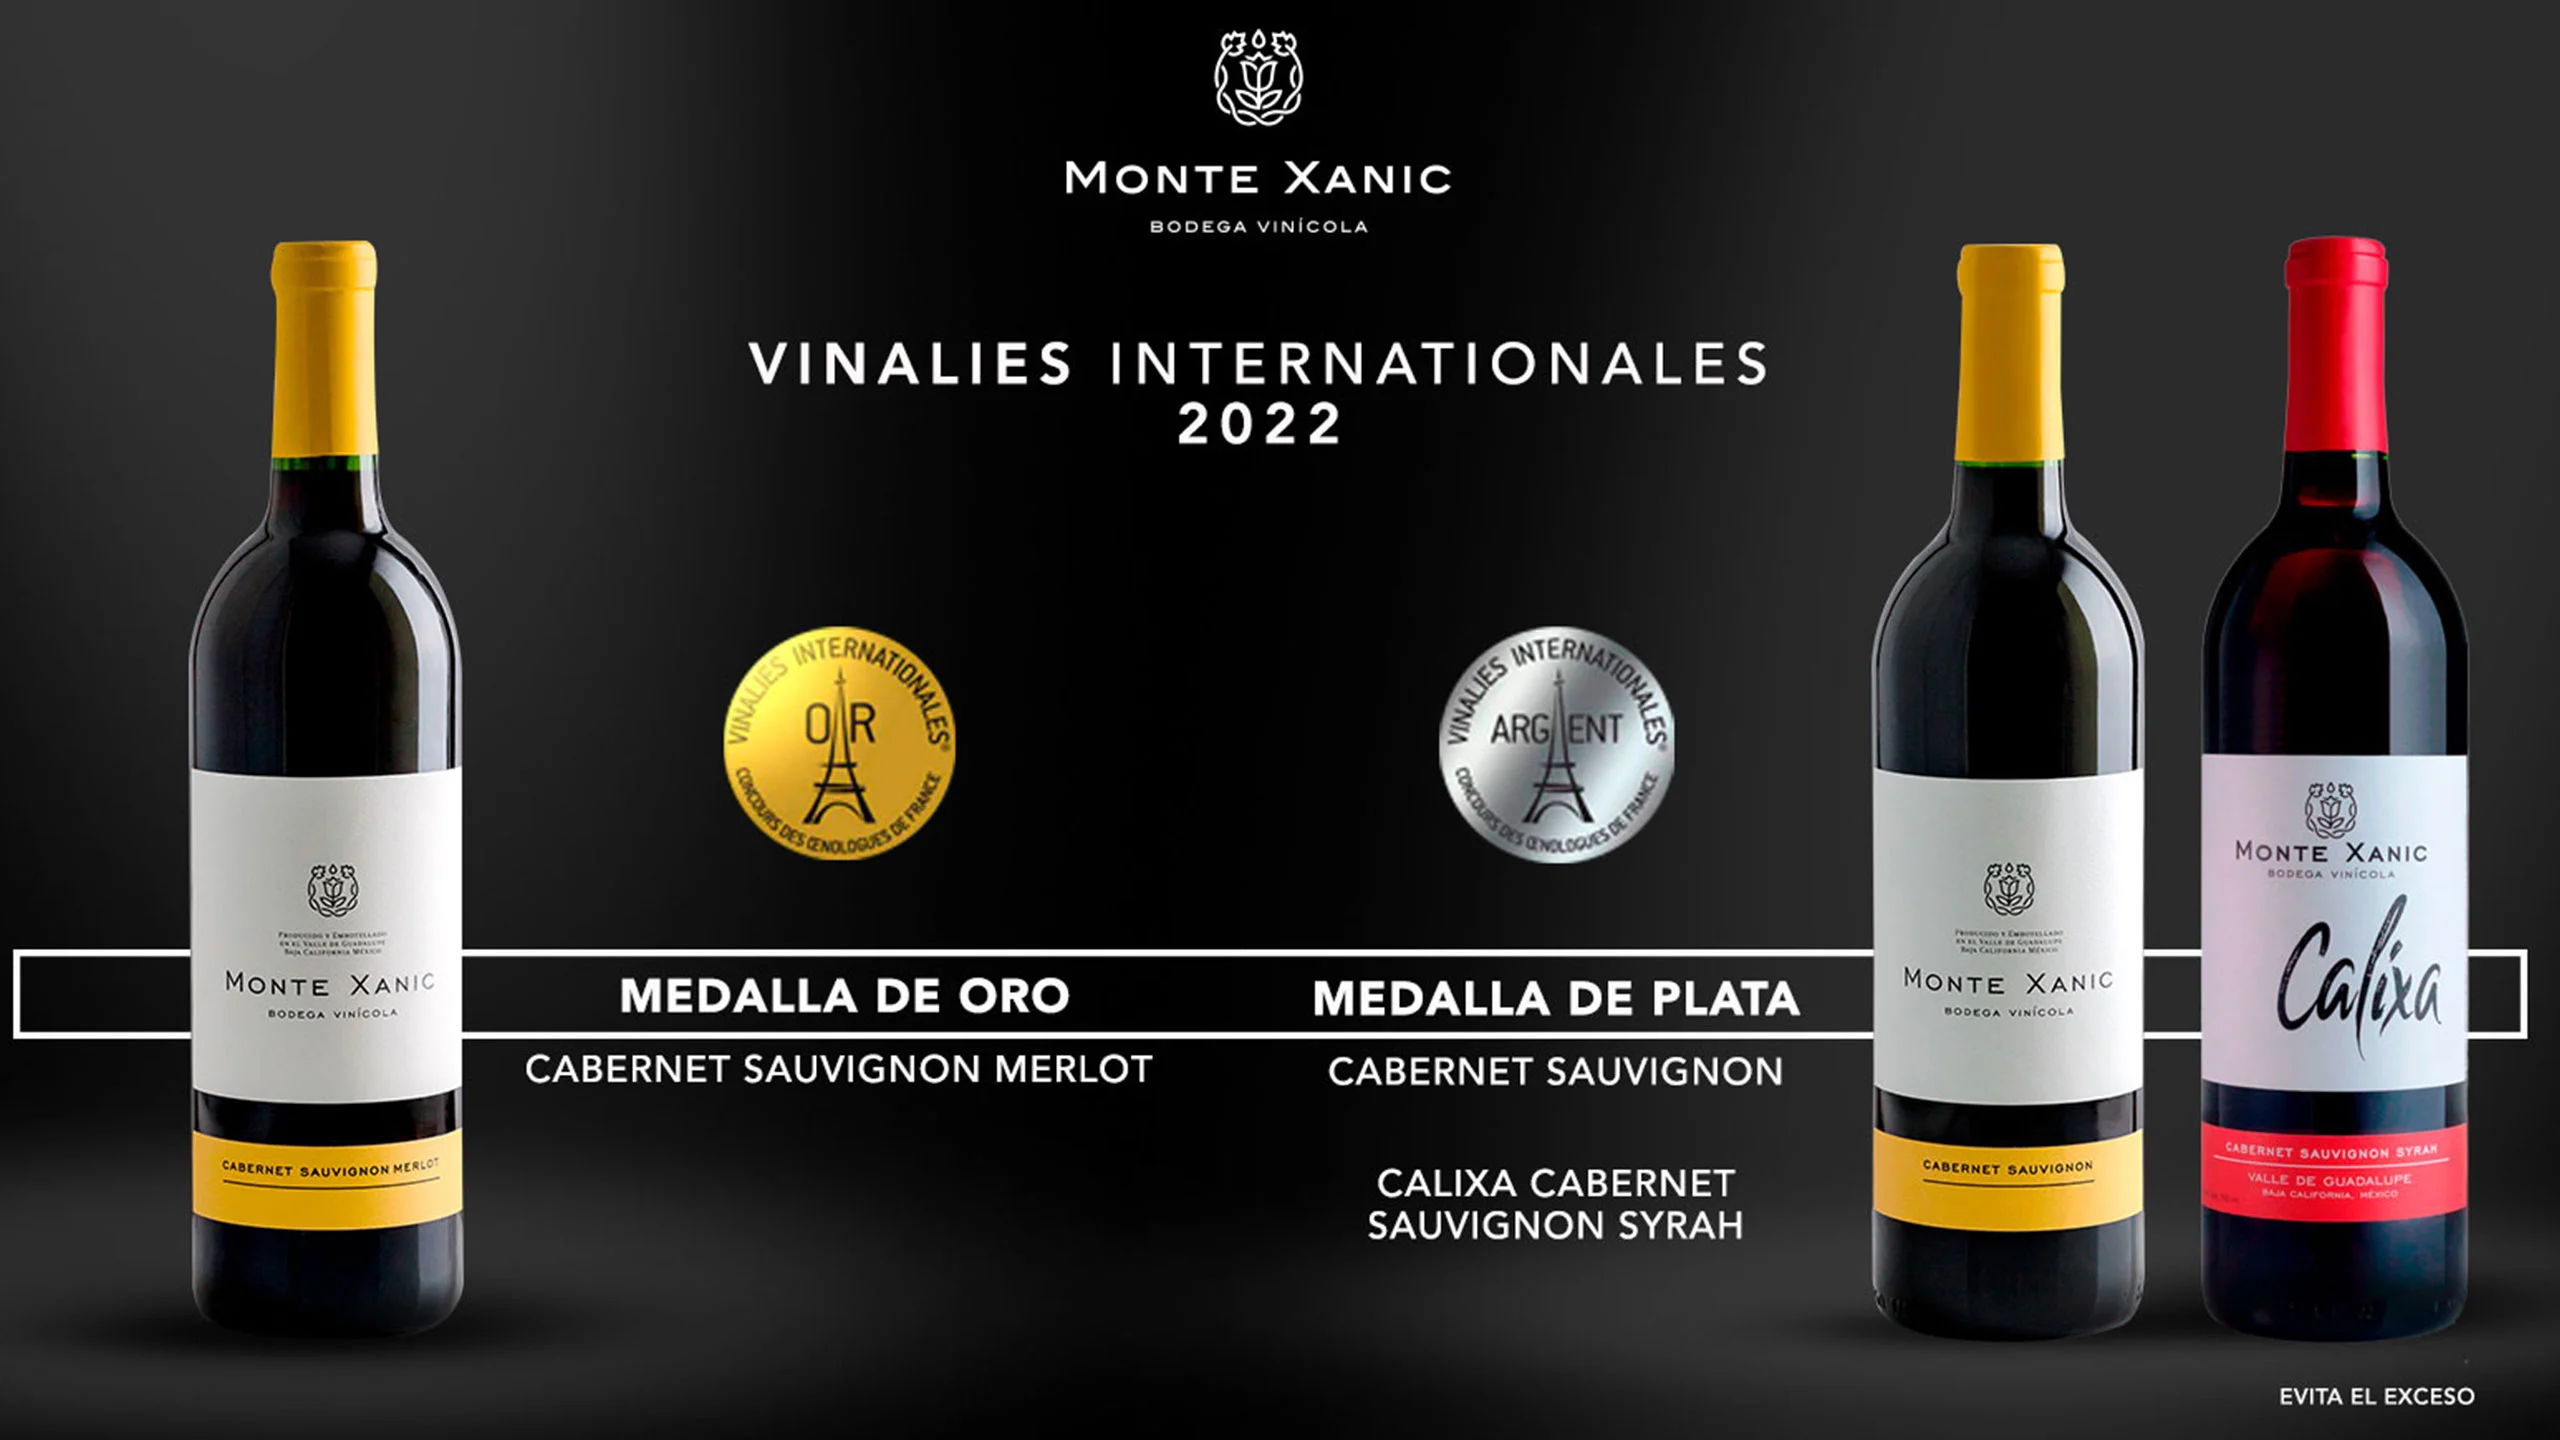 Vinos mexicanos de Monte Xanic son reconocidos en Vinalies Internationales 2022